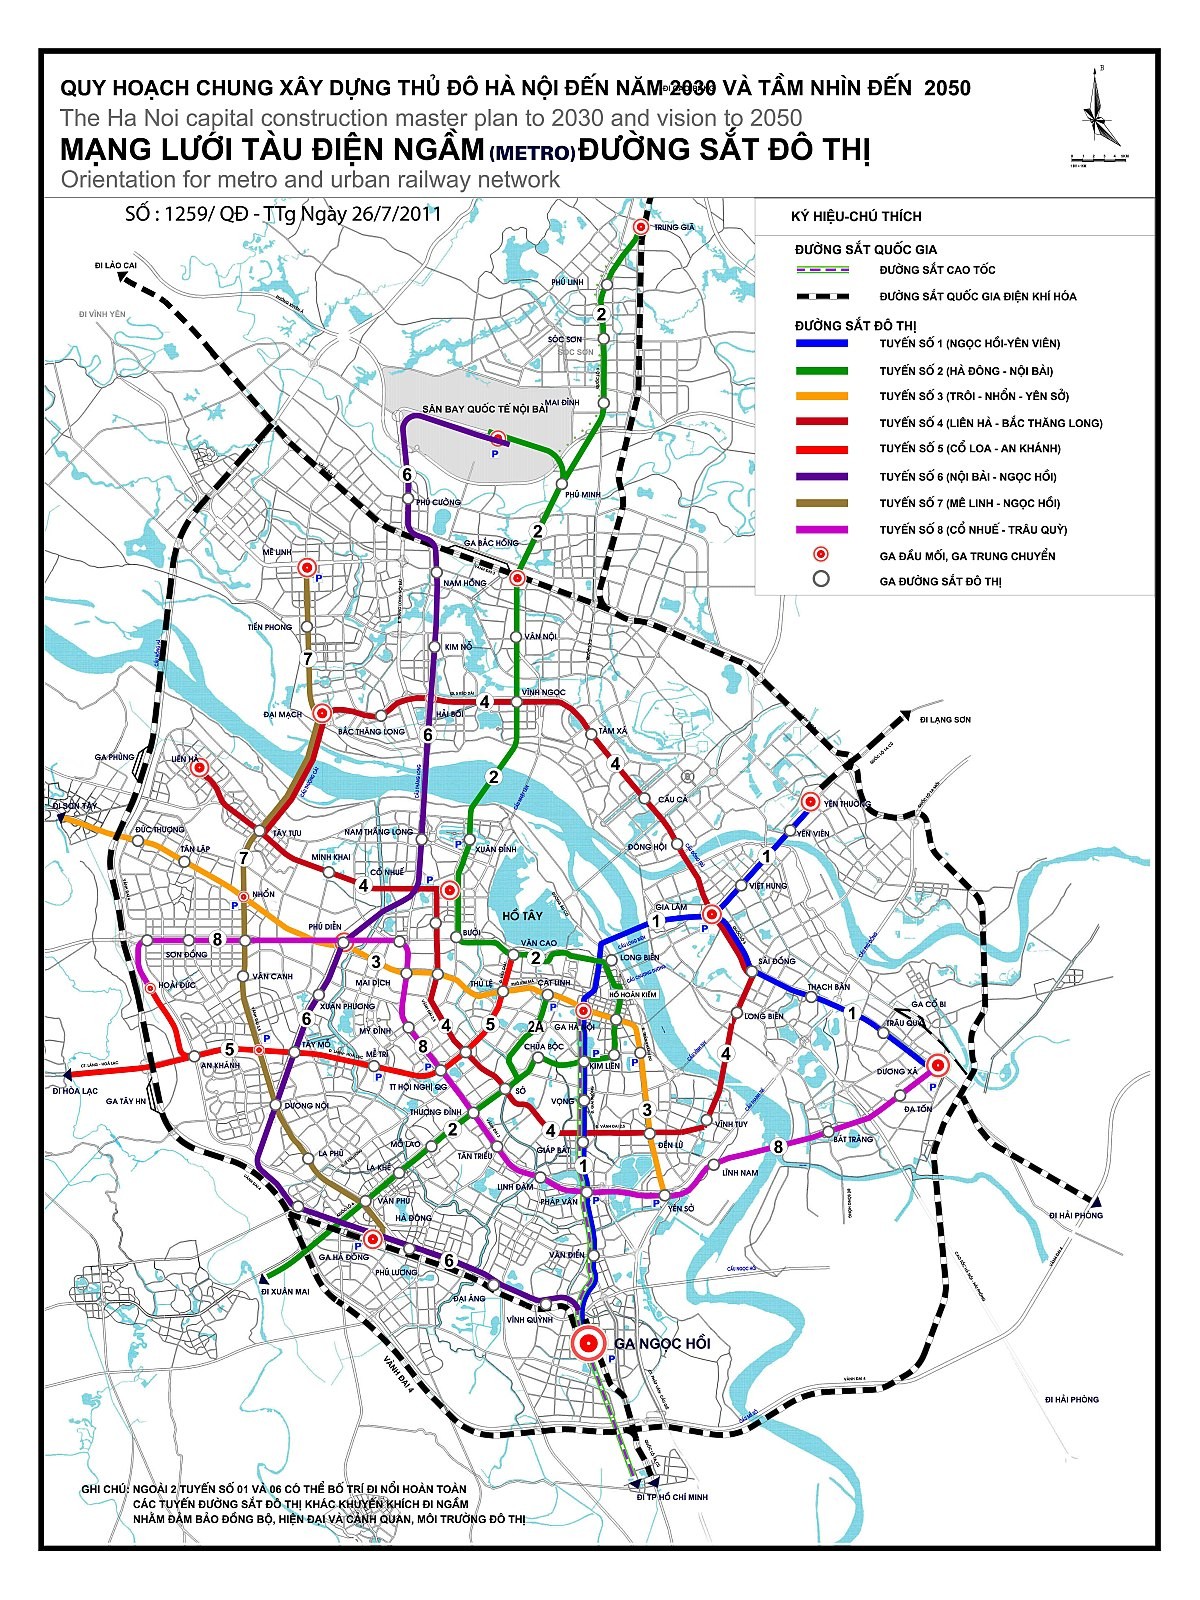 
Mạng lưới tàu điện ngầm và đường sắt đô thị Hà Nội
